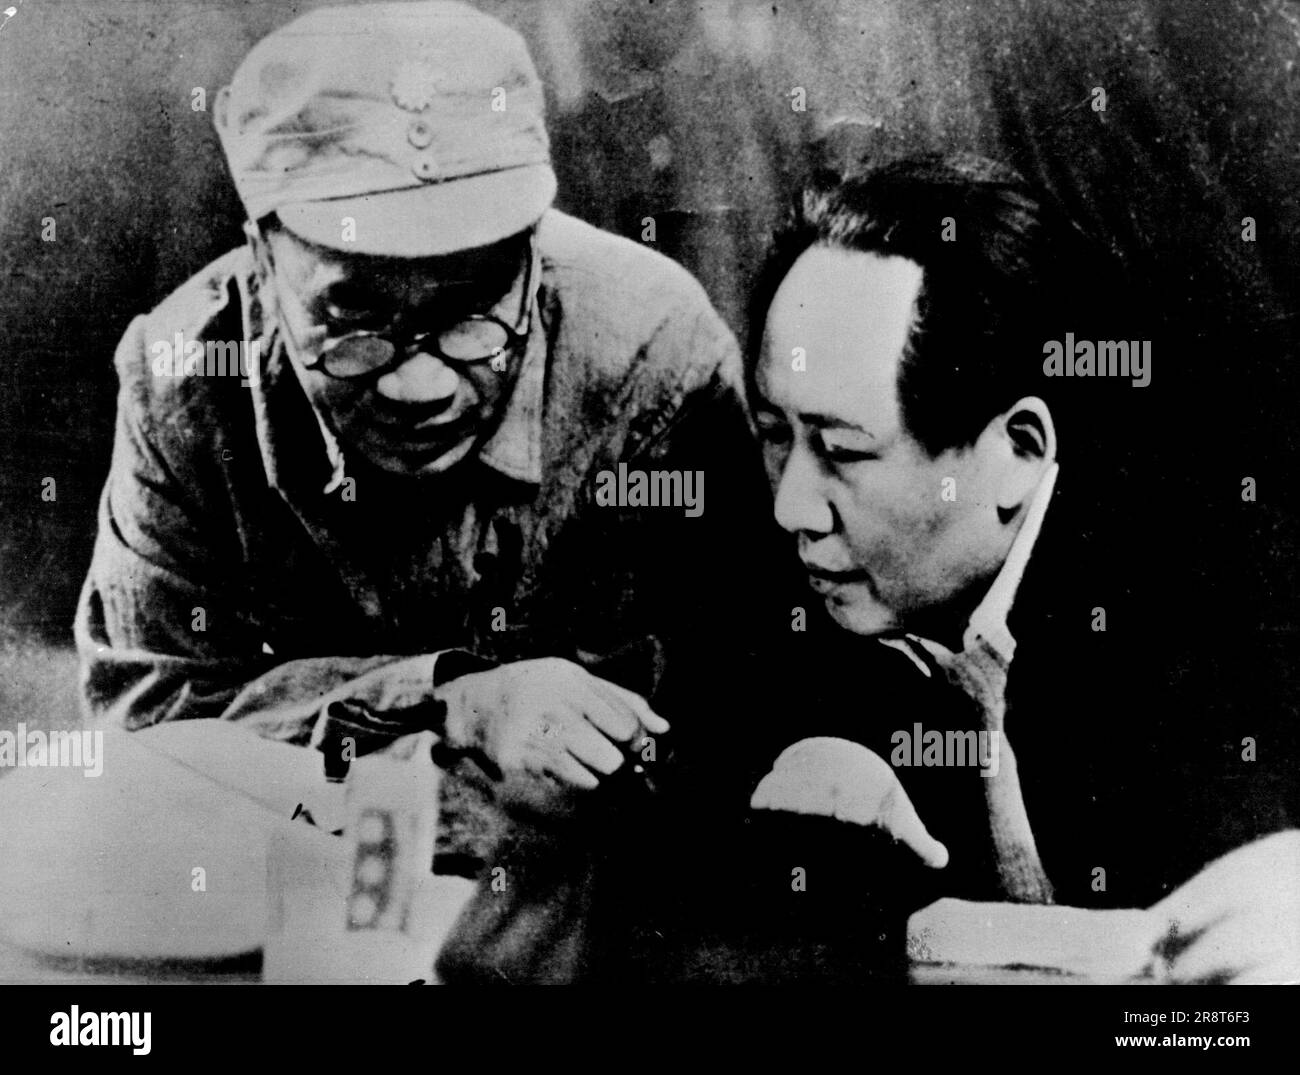 Mao Tse-Tung und sein C-IN-C. - Mao Tse-Tung, Vorsitzender der zentralen Volksregierung der Volksrepublik China, mit Chu Teh, Oberbefehlshaber der Streitkräfte des kommunistischen Chinas. Dieses Foto wurde während des chinesischen Bürgerkriegs in1948 aufgenommen. 6. März 1951. (Foto von Camera Press). Stockfoto